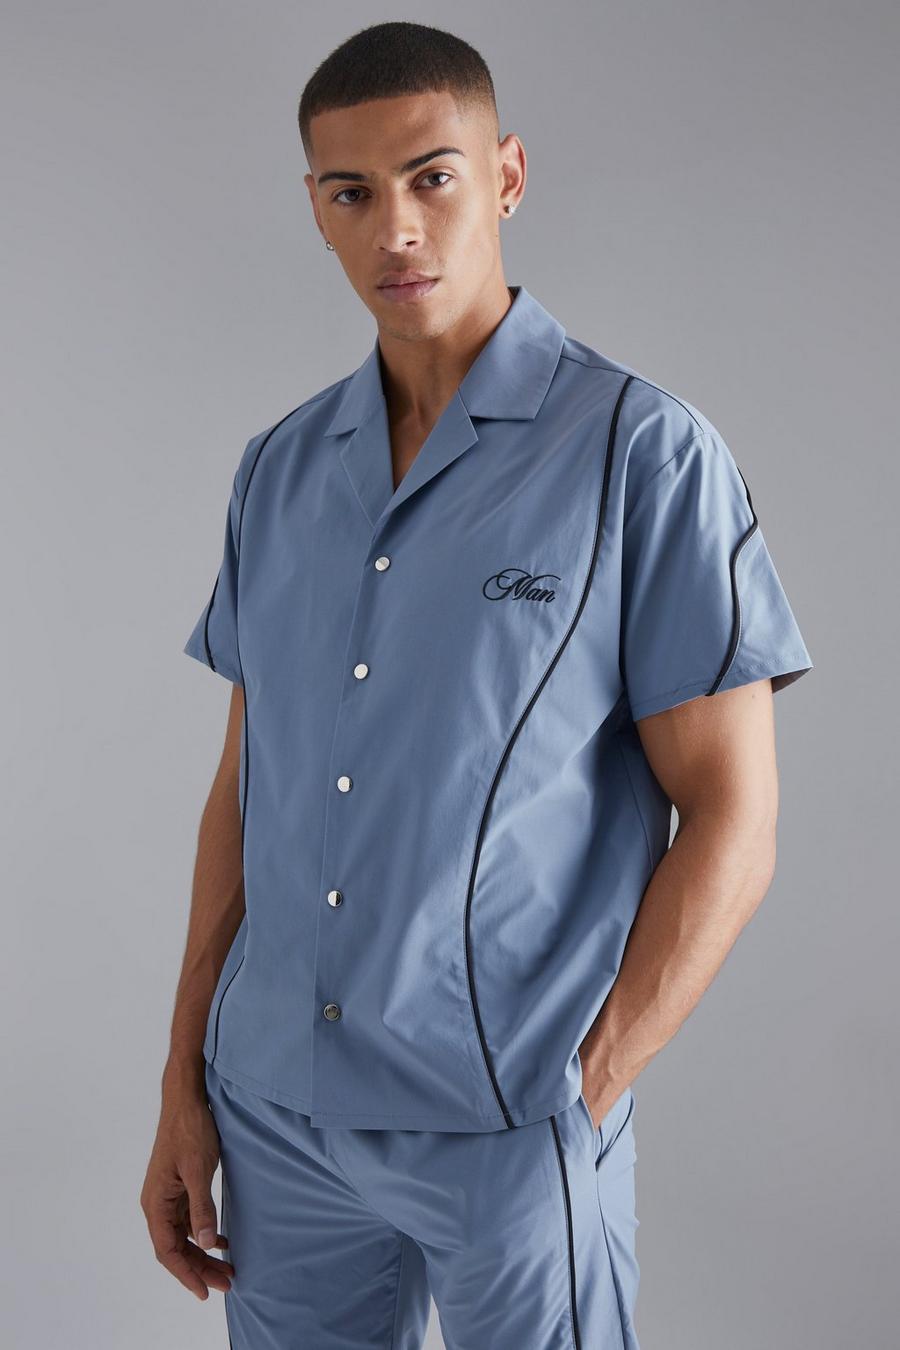 Slate blue Skjorta med kantband och brodyr